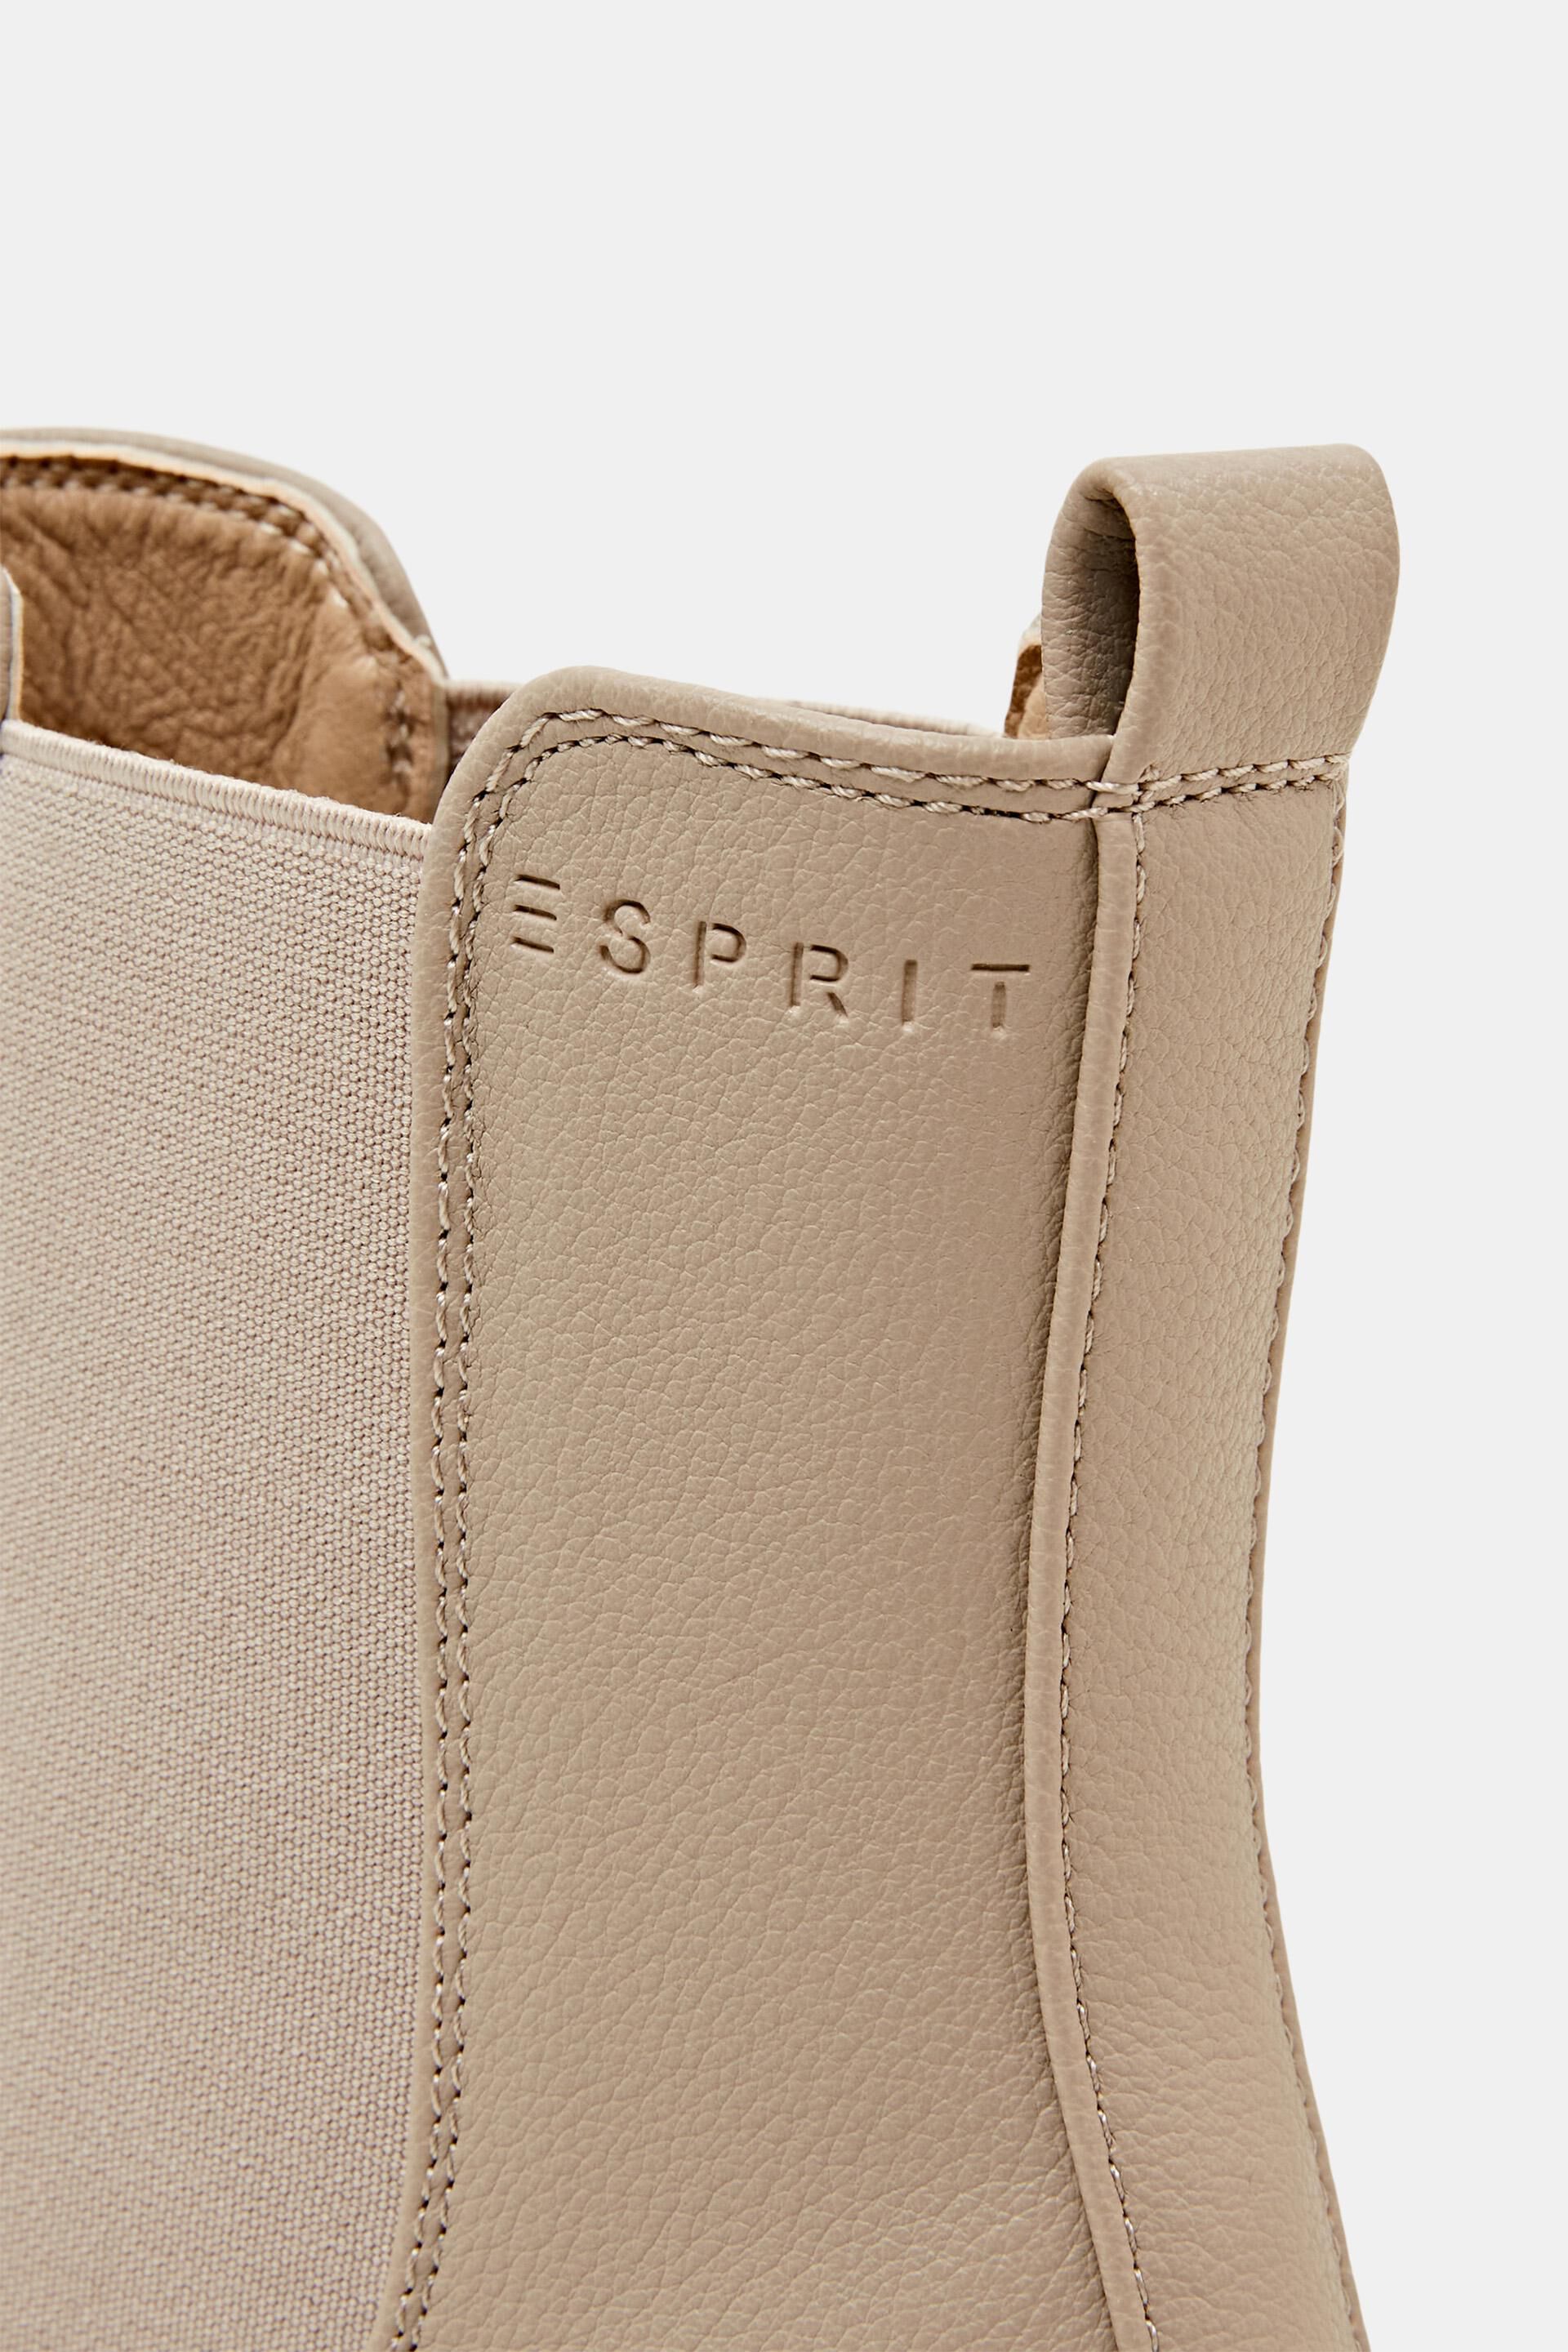 Esprit On Line Klobige Stiefel aus Kunstleder